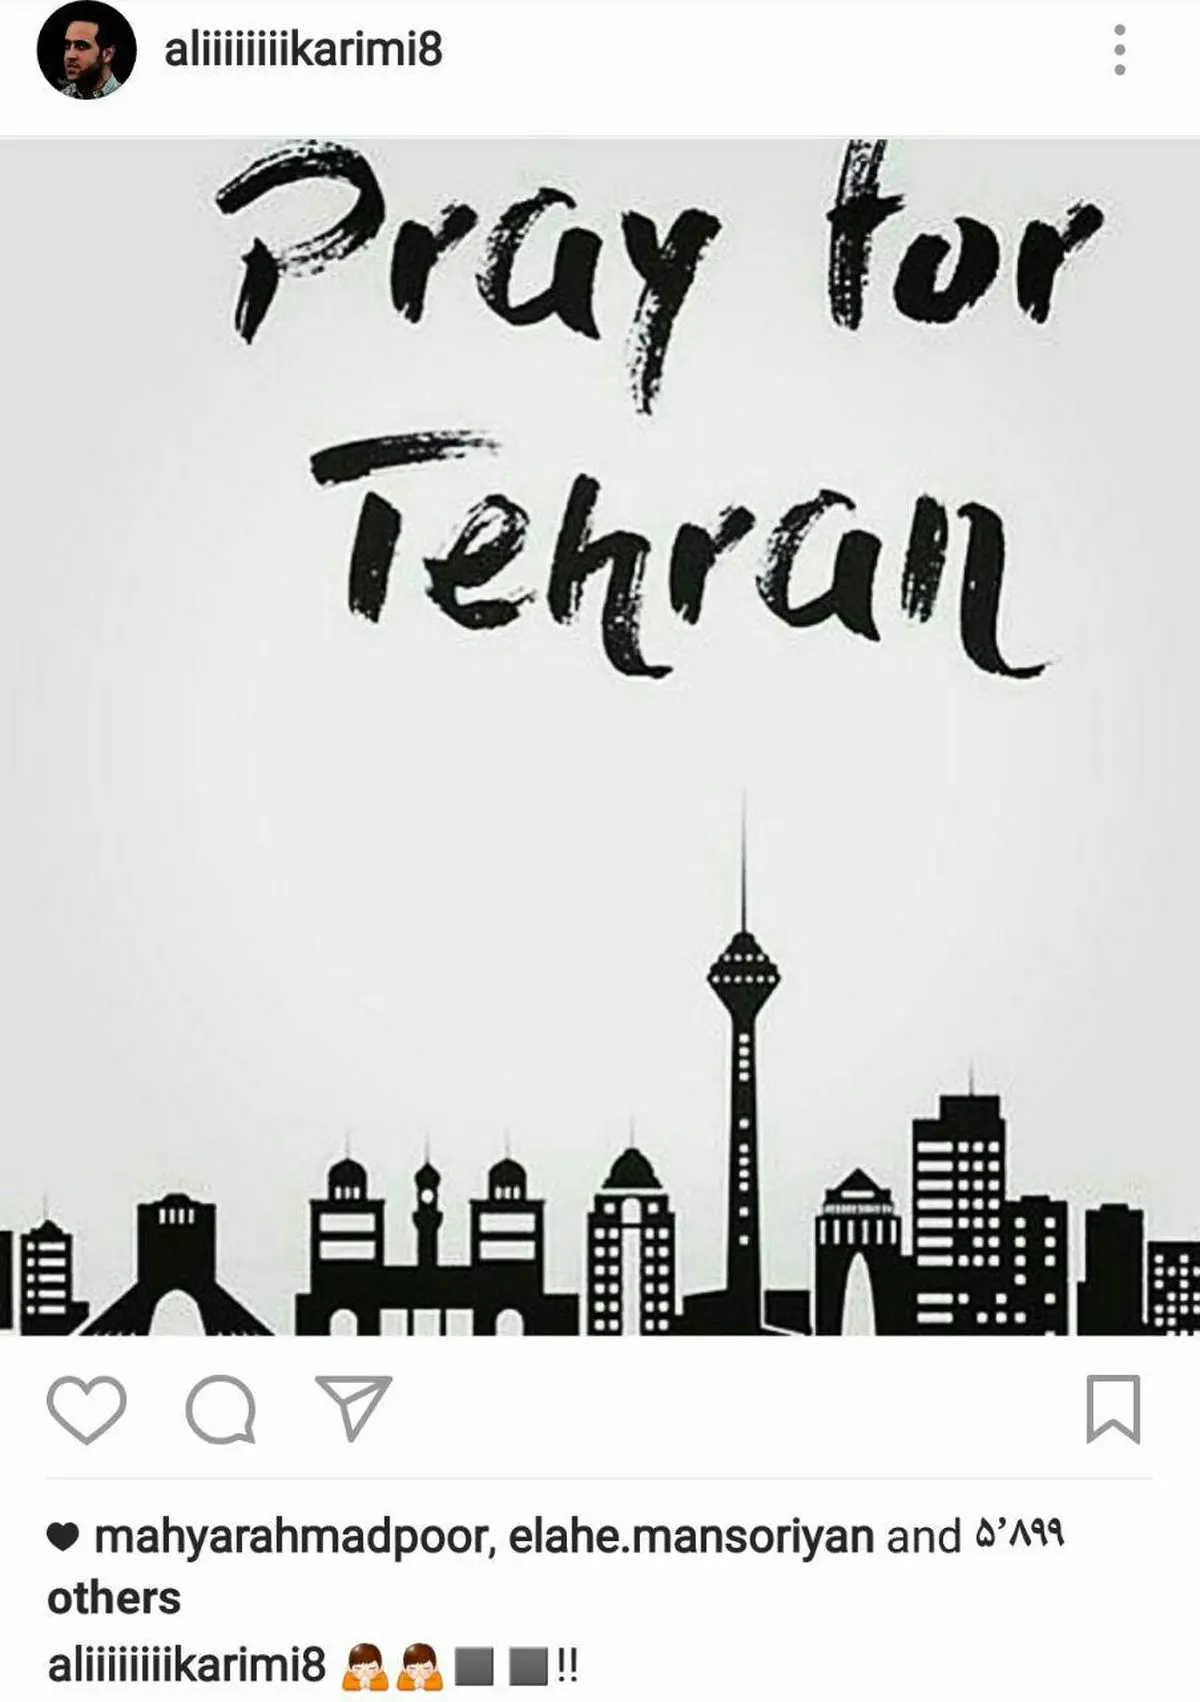 واکنش علی کریمی به حملات تروریستی امروز در تهران +تصویر